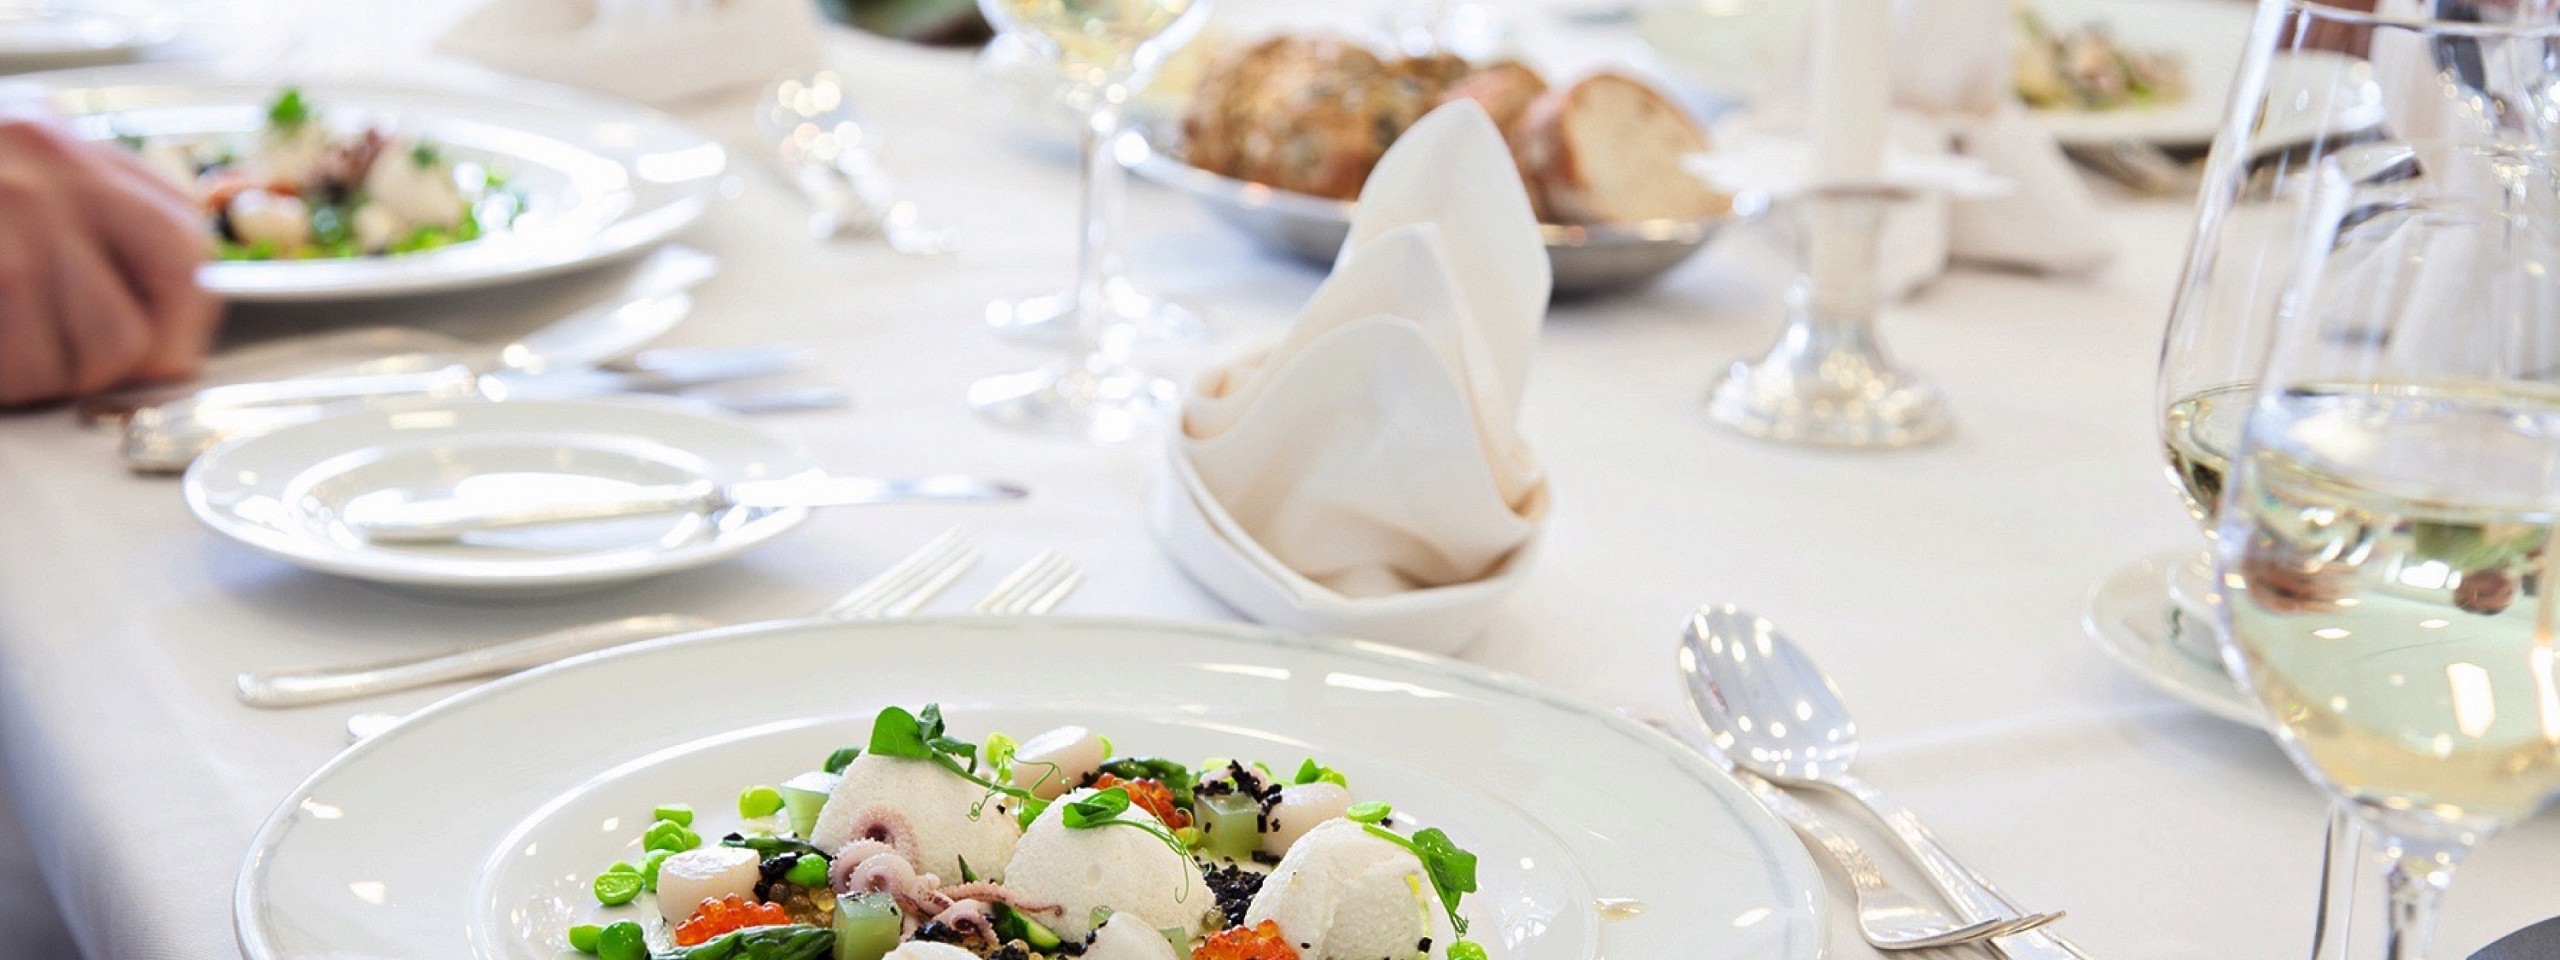 Weiß gedeckter Tisch mit Fischgerichten und Brot serviert im Restaurant in Baiersbronn.